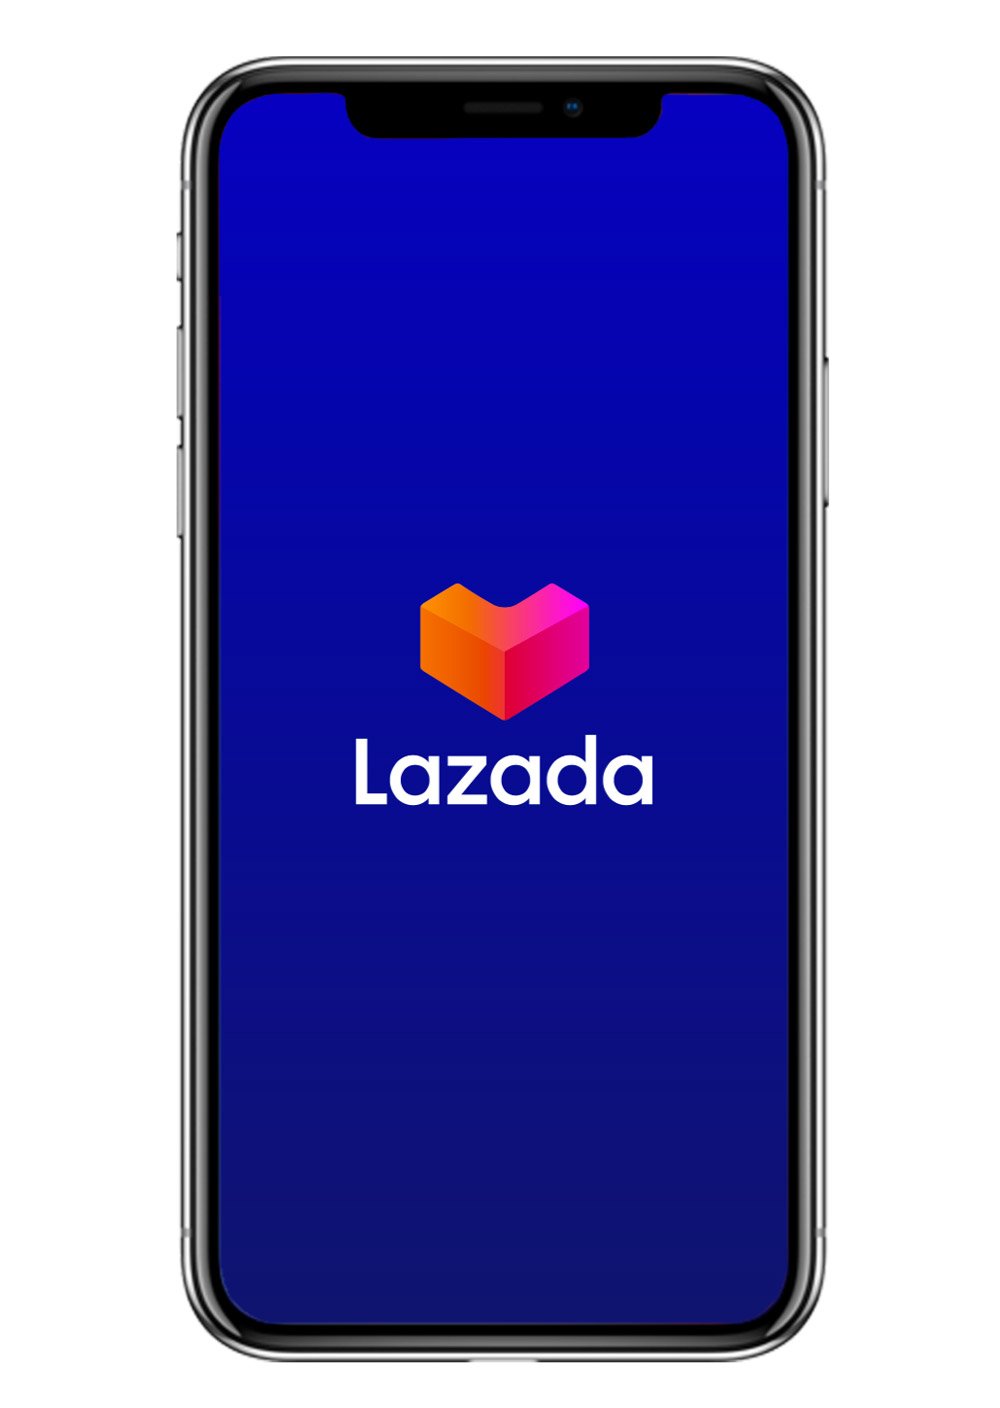 Lazada全新标志强调动感及活力，符合年轻人的审美与气质， 以“心”为主要元素。“心”造型是立体的大写字母 “L”来呈现，也是3D维度纸箱，象征品牌初心。此外，全 新字体简洁优雅， 意味著拥抱现代的数码时代，而全新的 标识色调也反映了购物的多纬度与多样性。